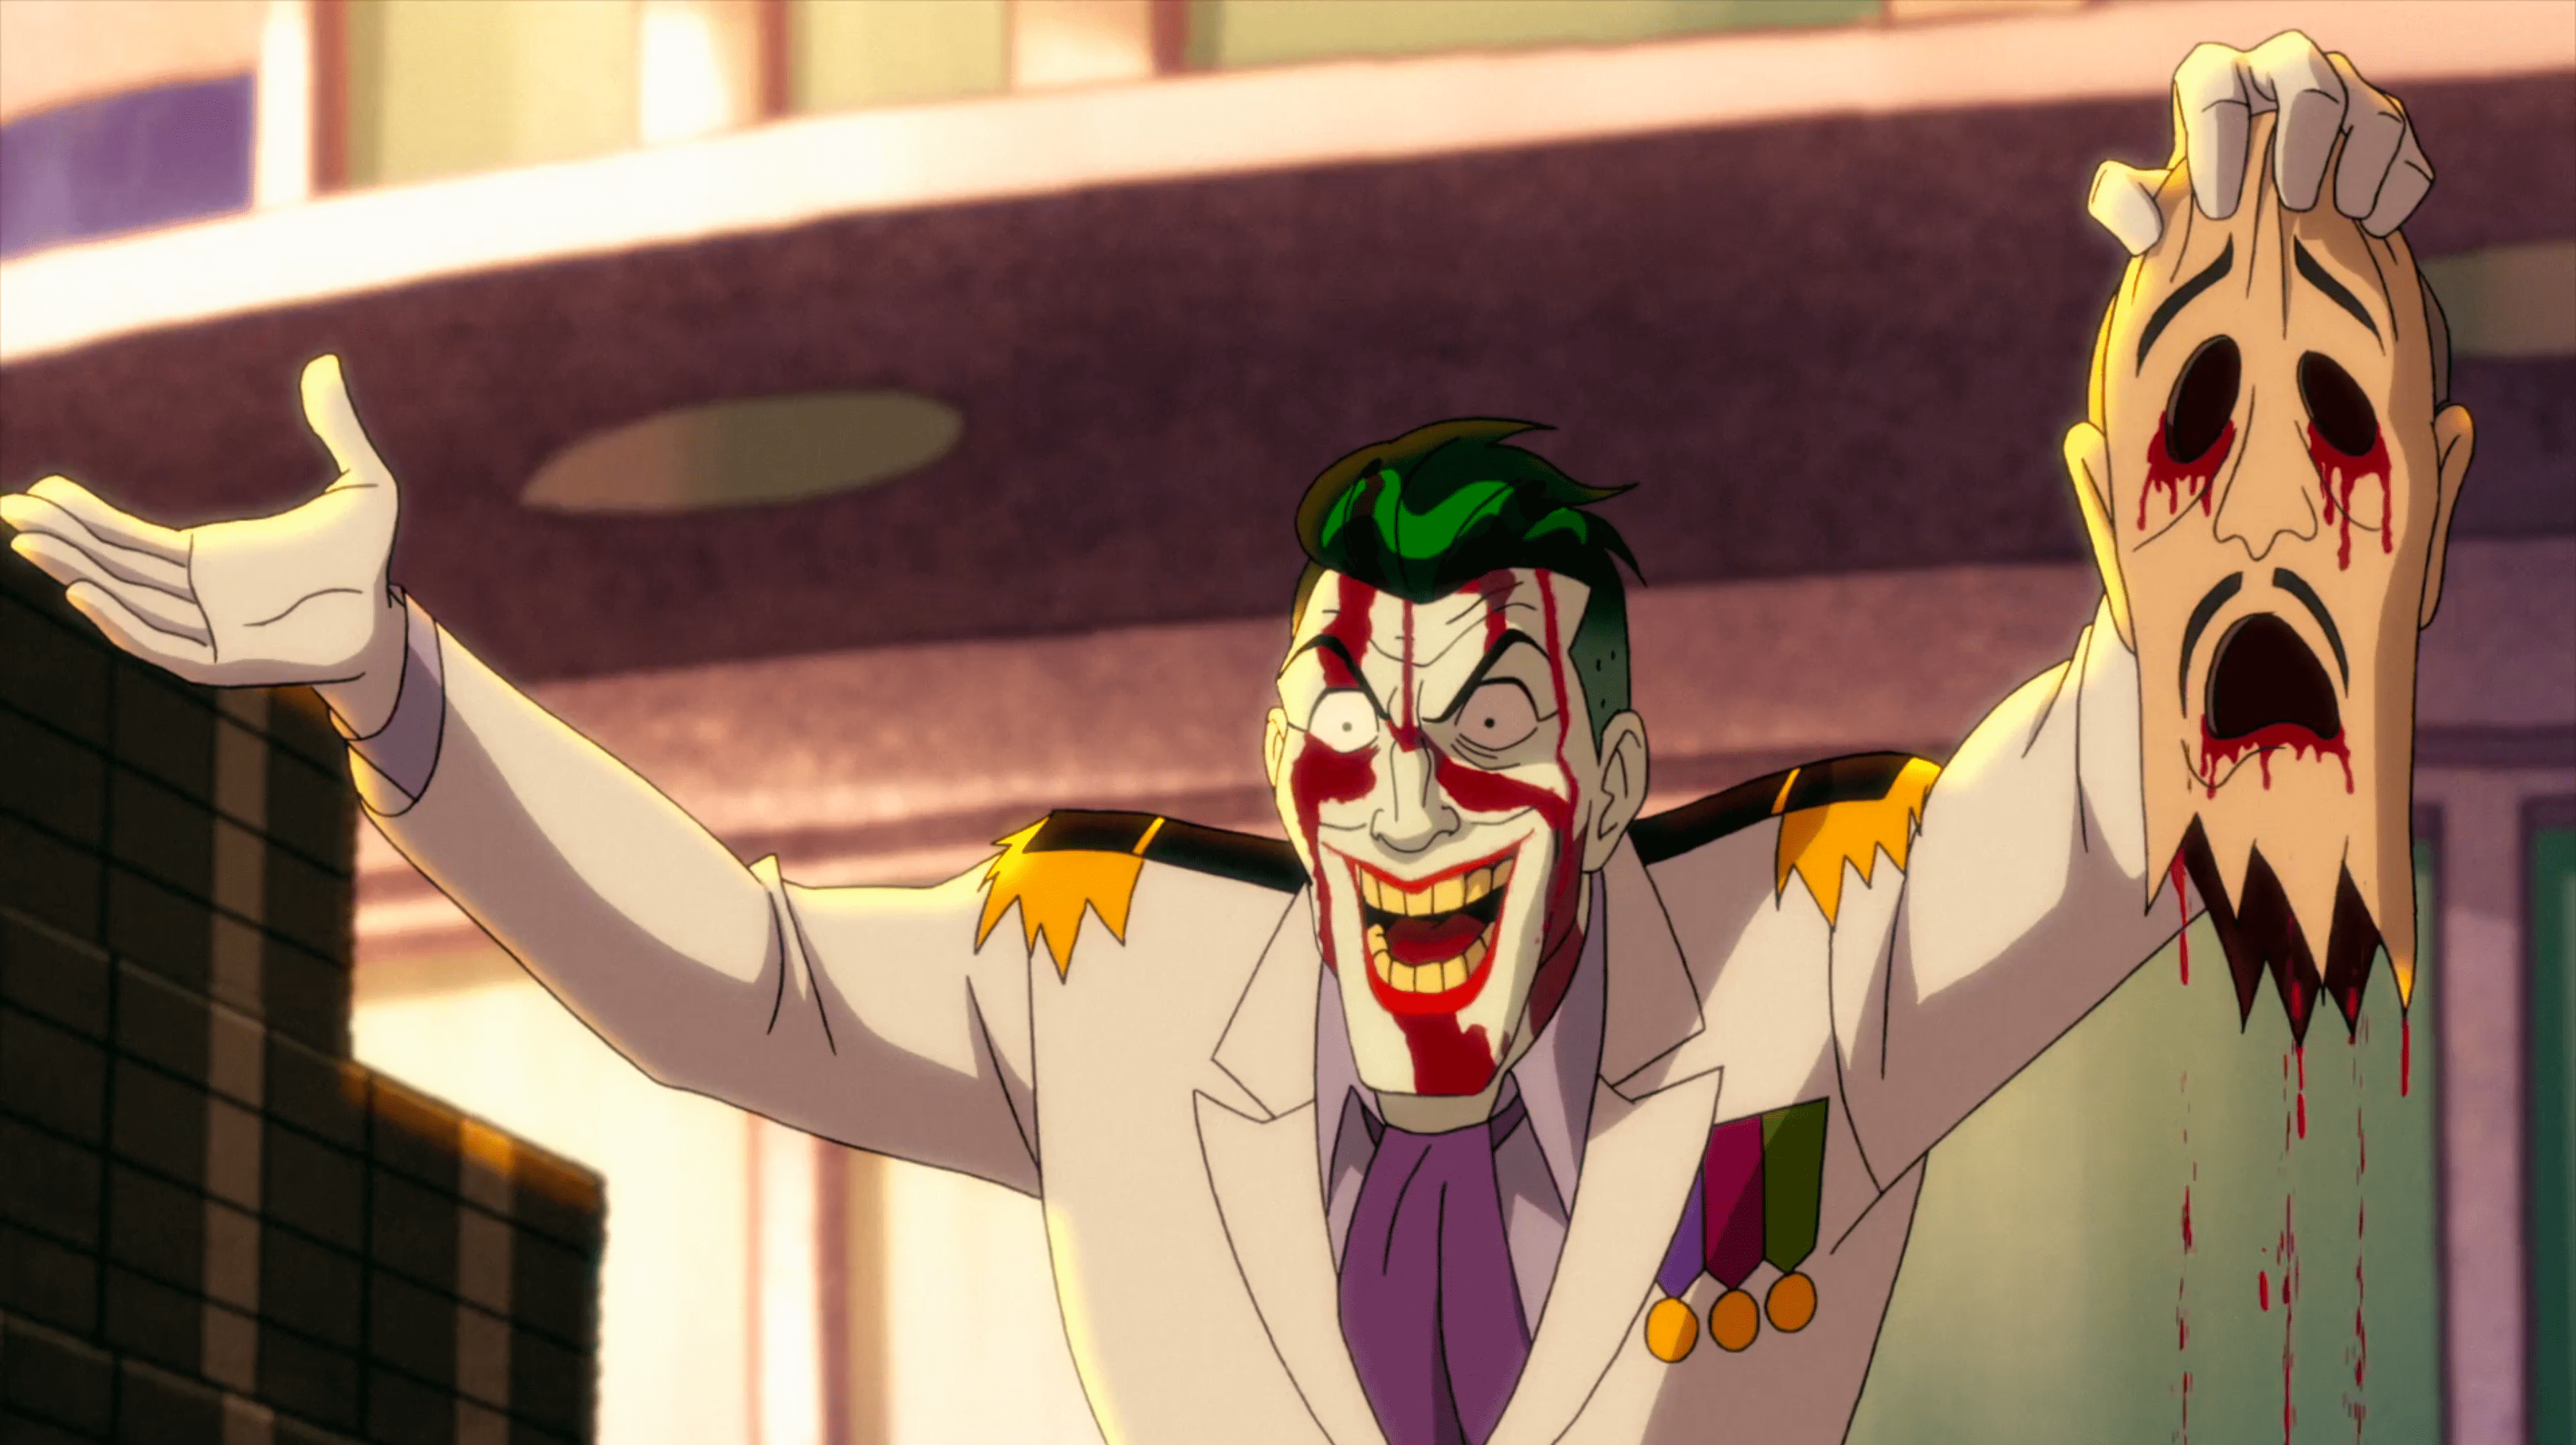 The Joker | Harley Quinn Wiki | Fandom